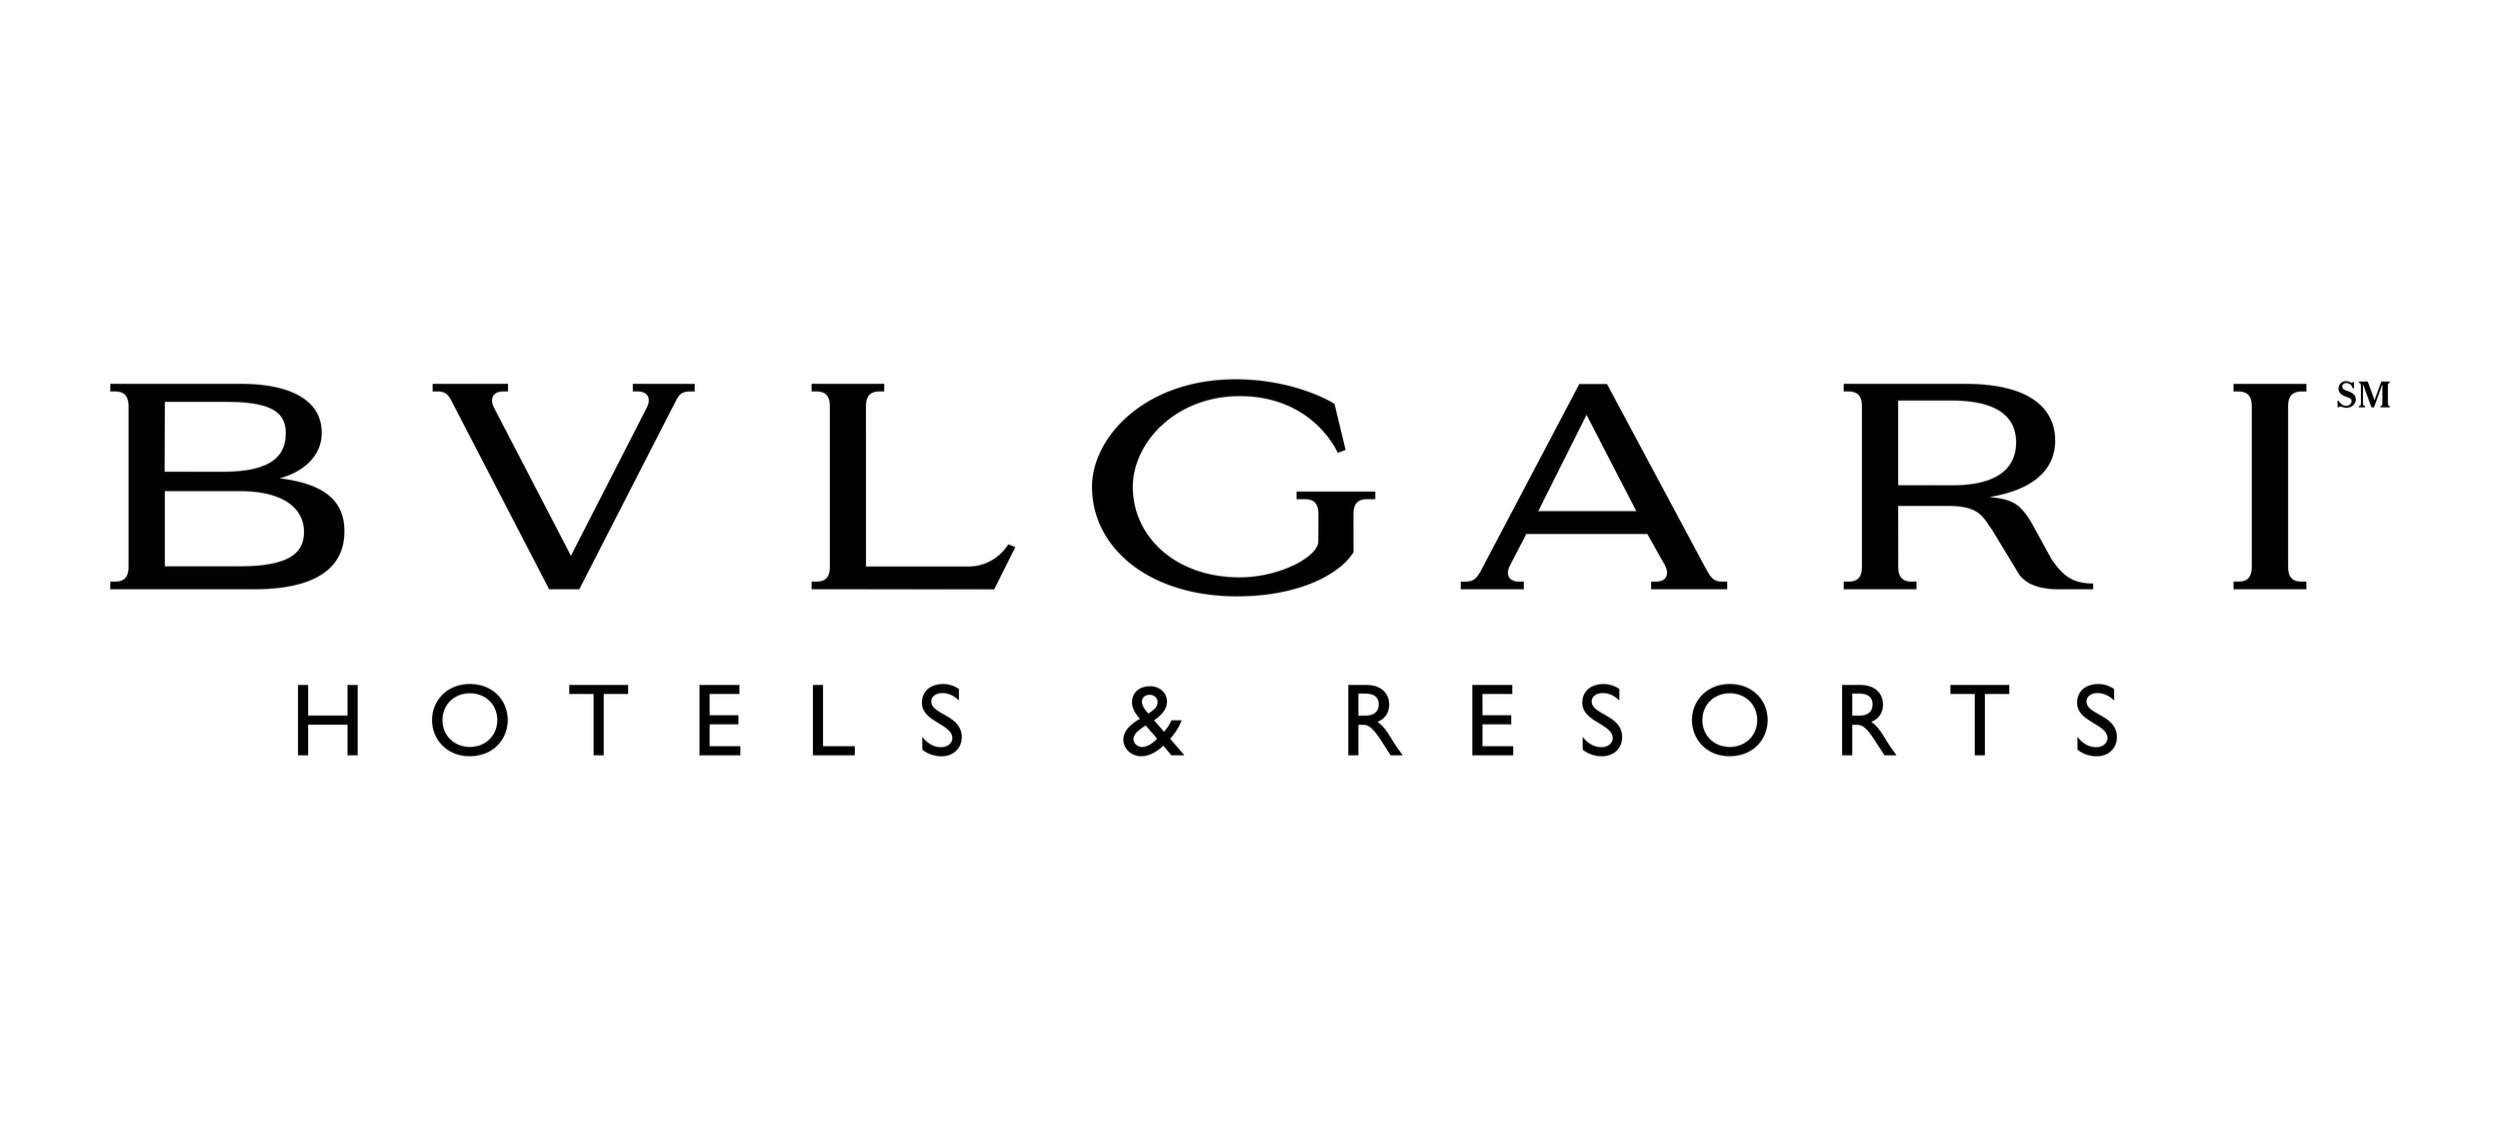 bvlgari-hotels-resorts.jpg